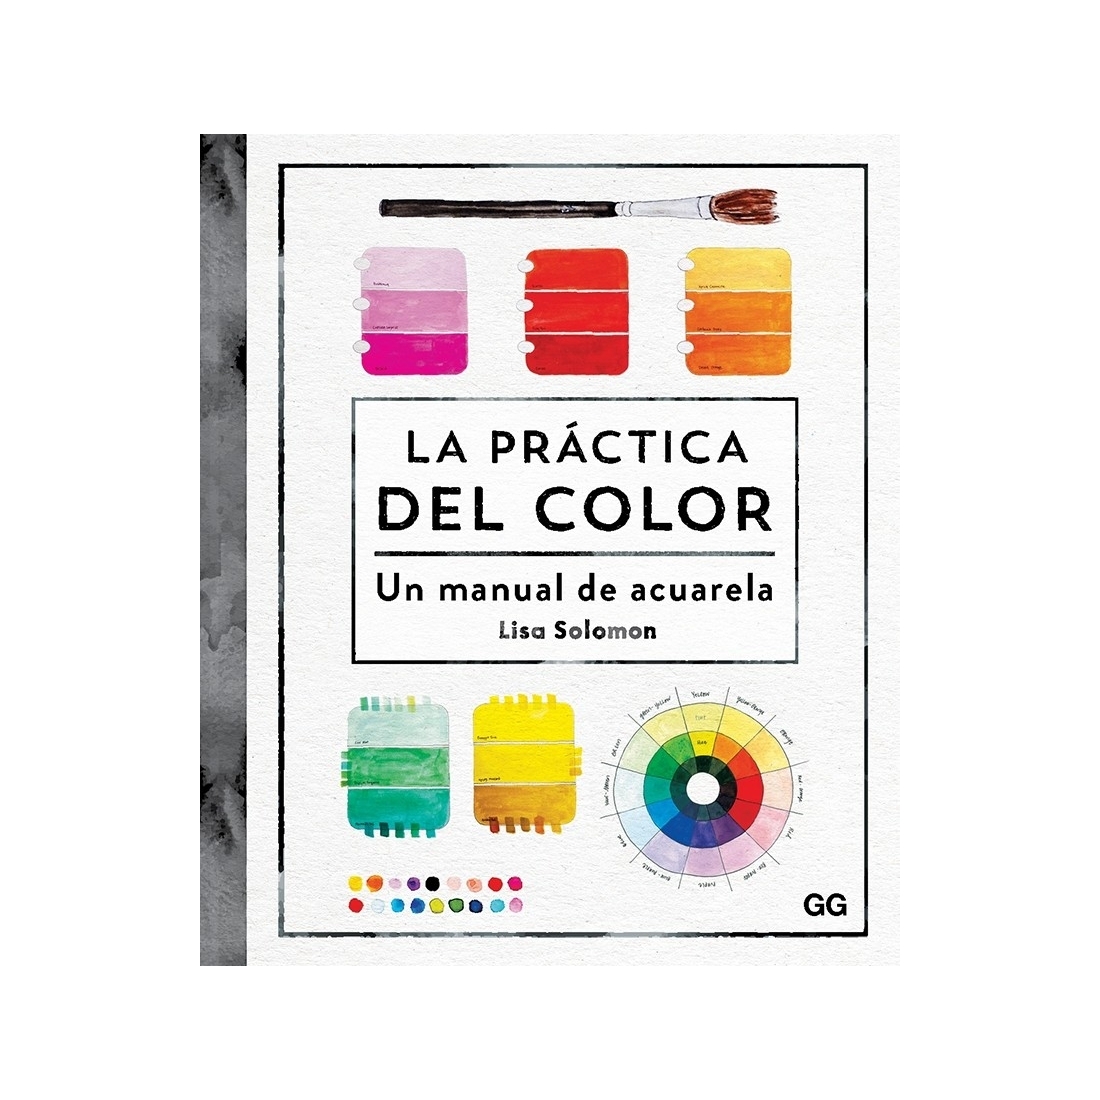 La práctica del color - Un manual de acuarela